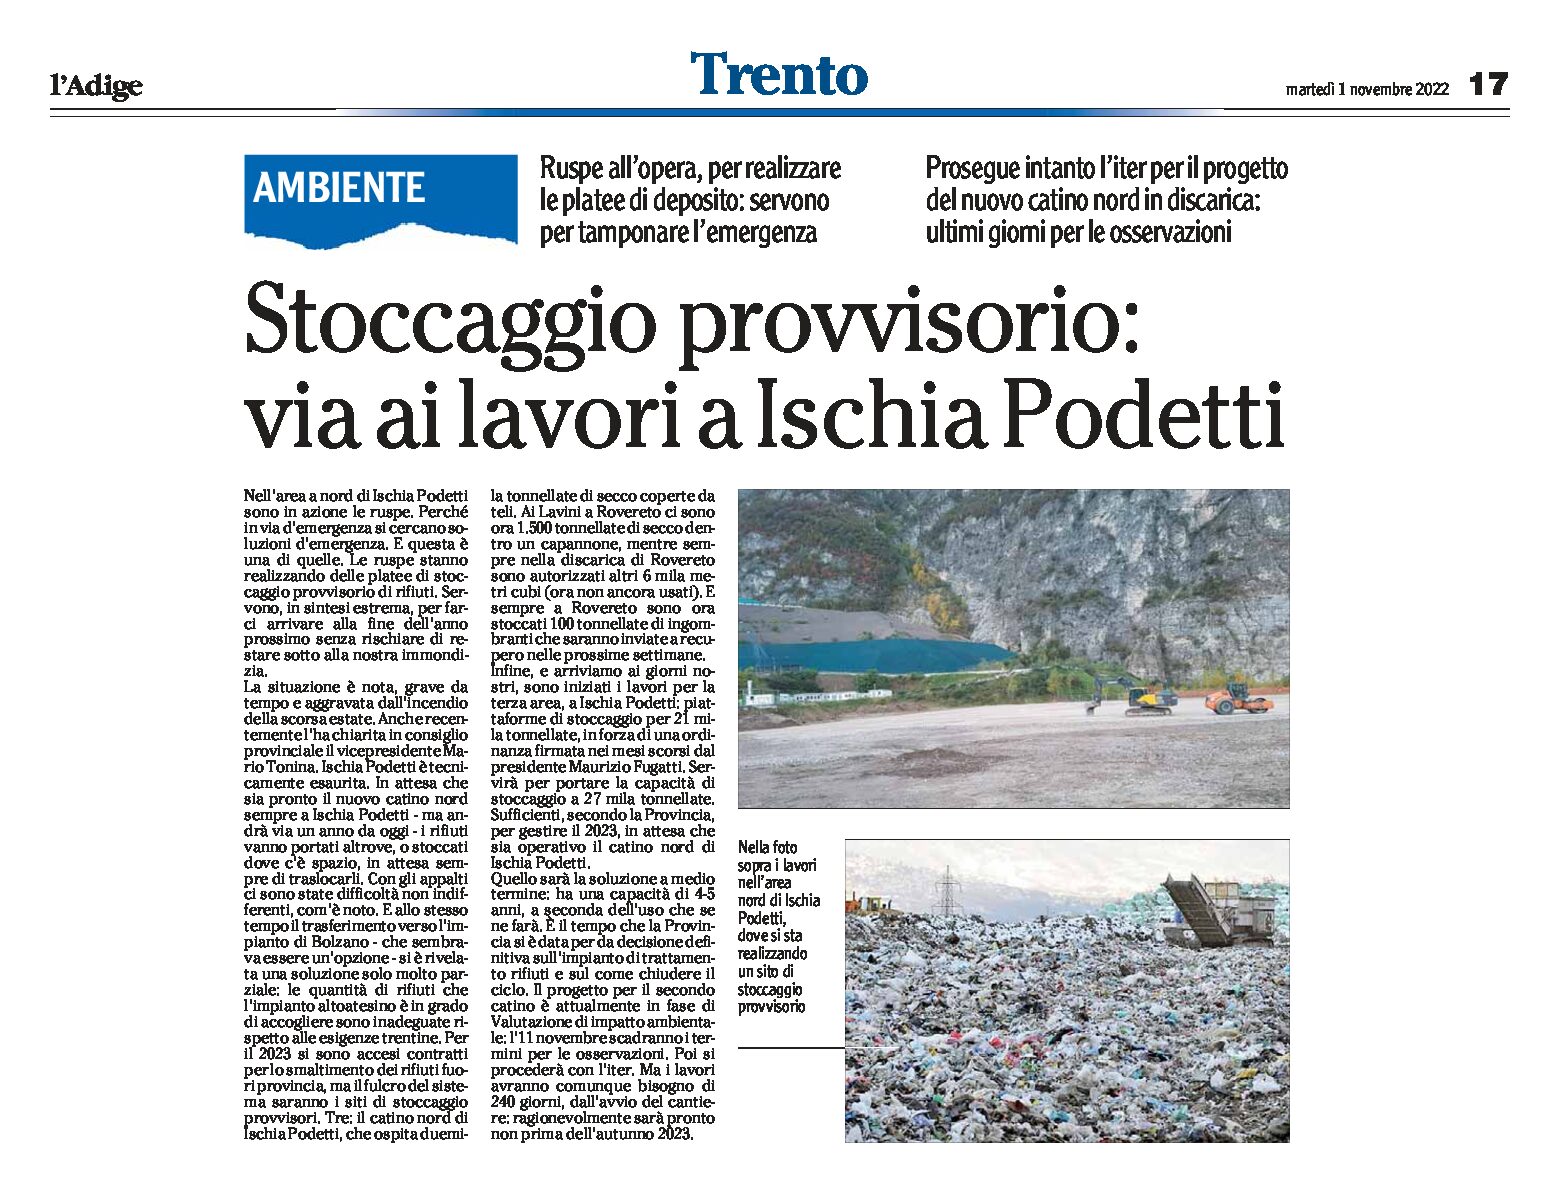 Trentino, rifiuti: via ai lavori a Ischia Podetti per uno stoccaggio provvisorio